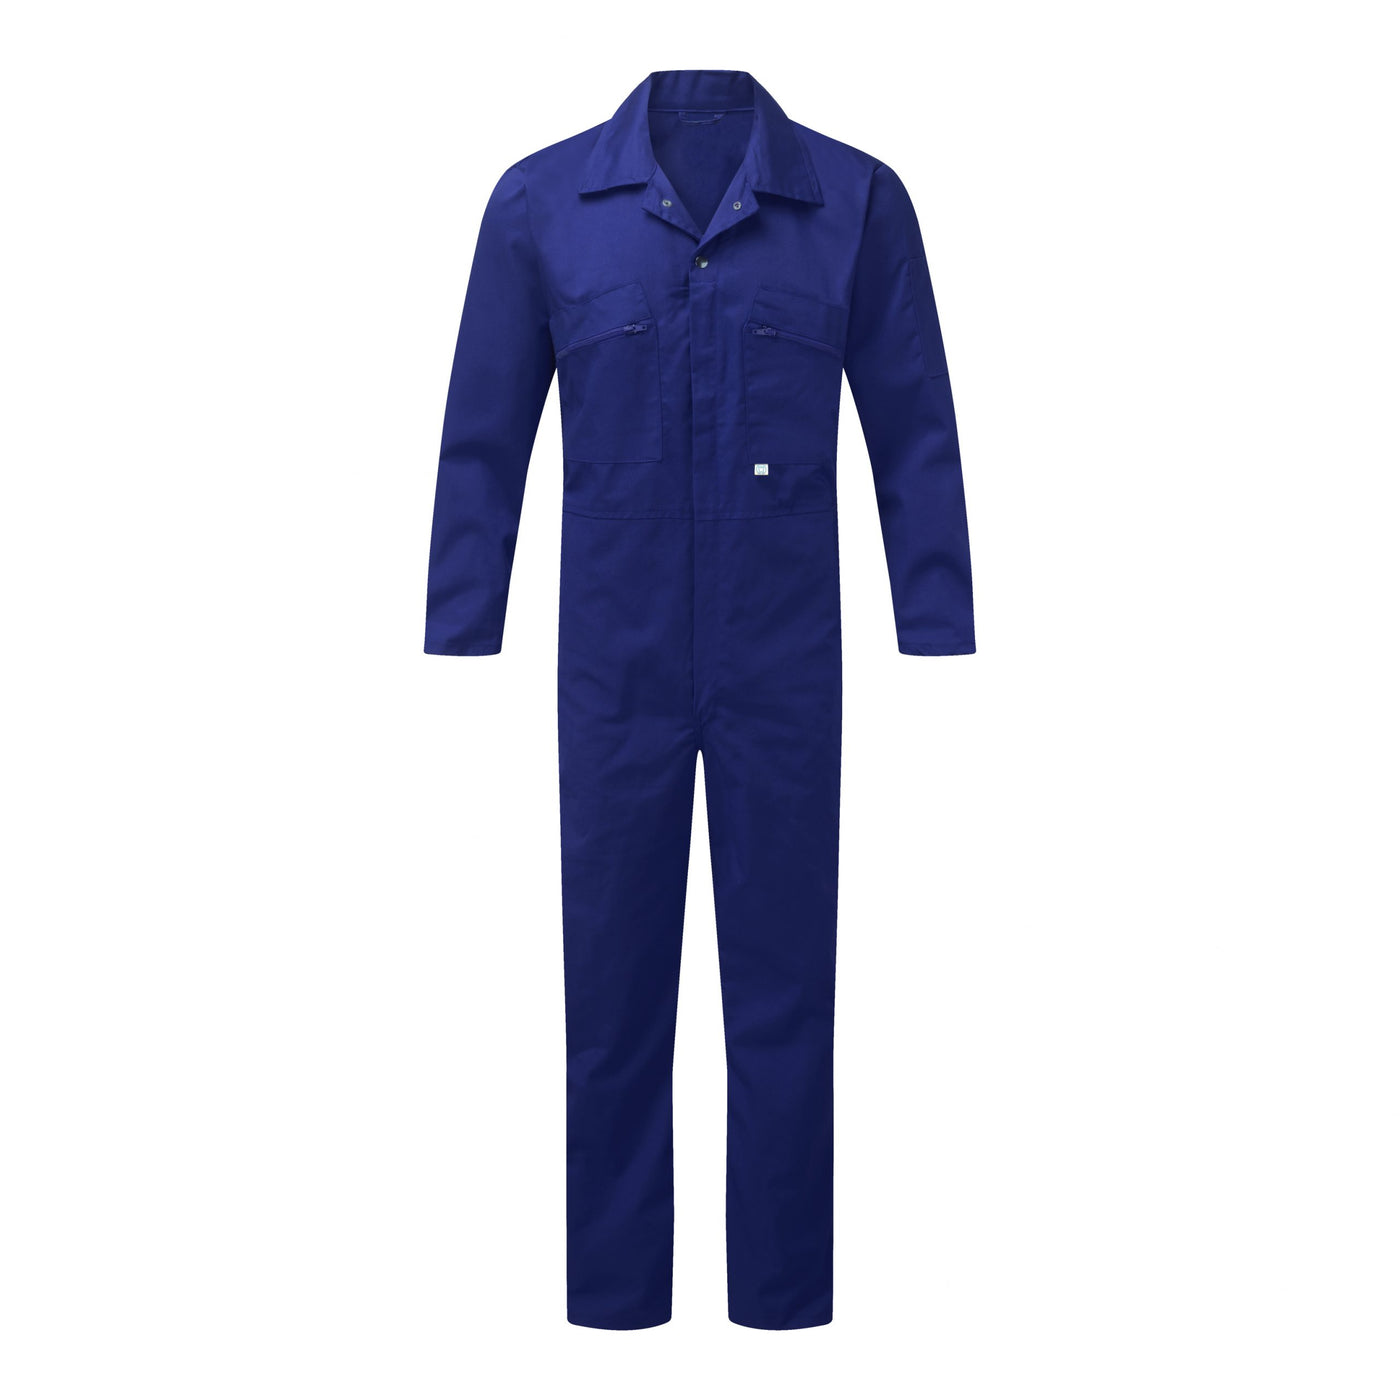 Castle Clothing 366 Zip Front Boilersuit, Royal Blue